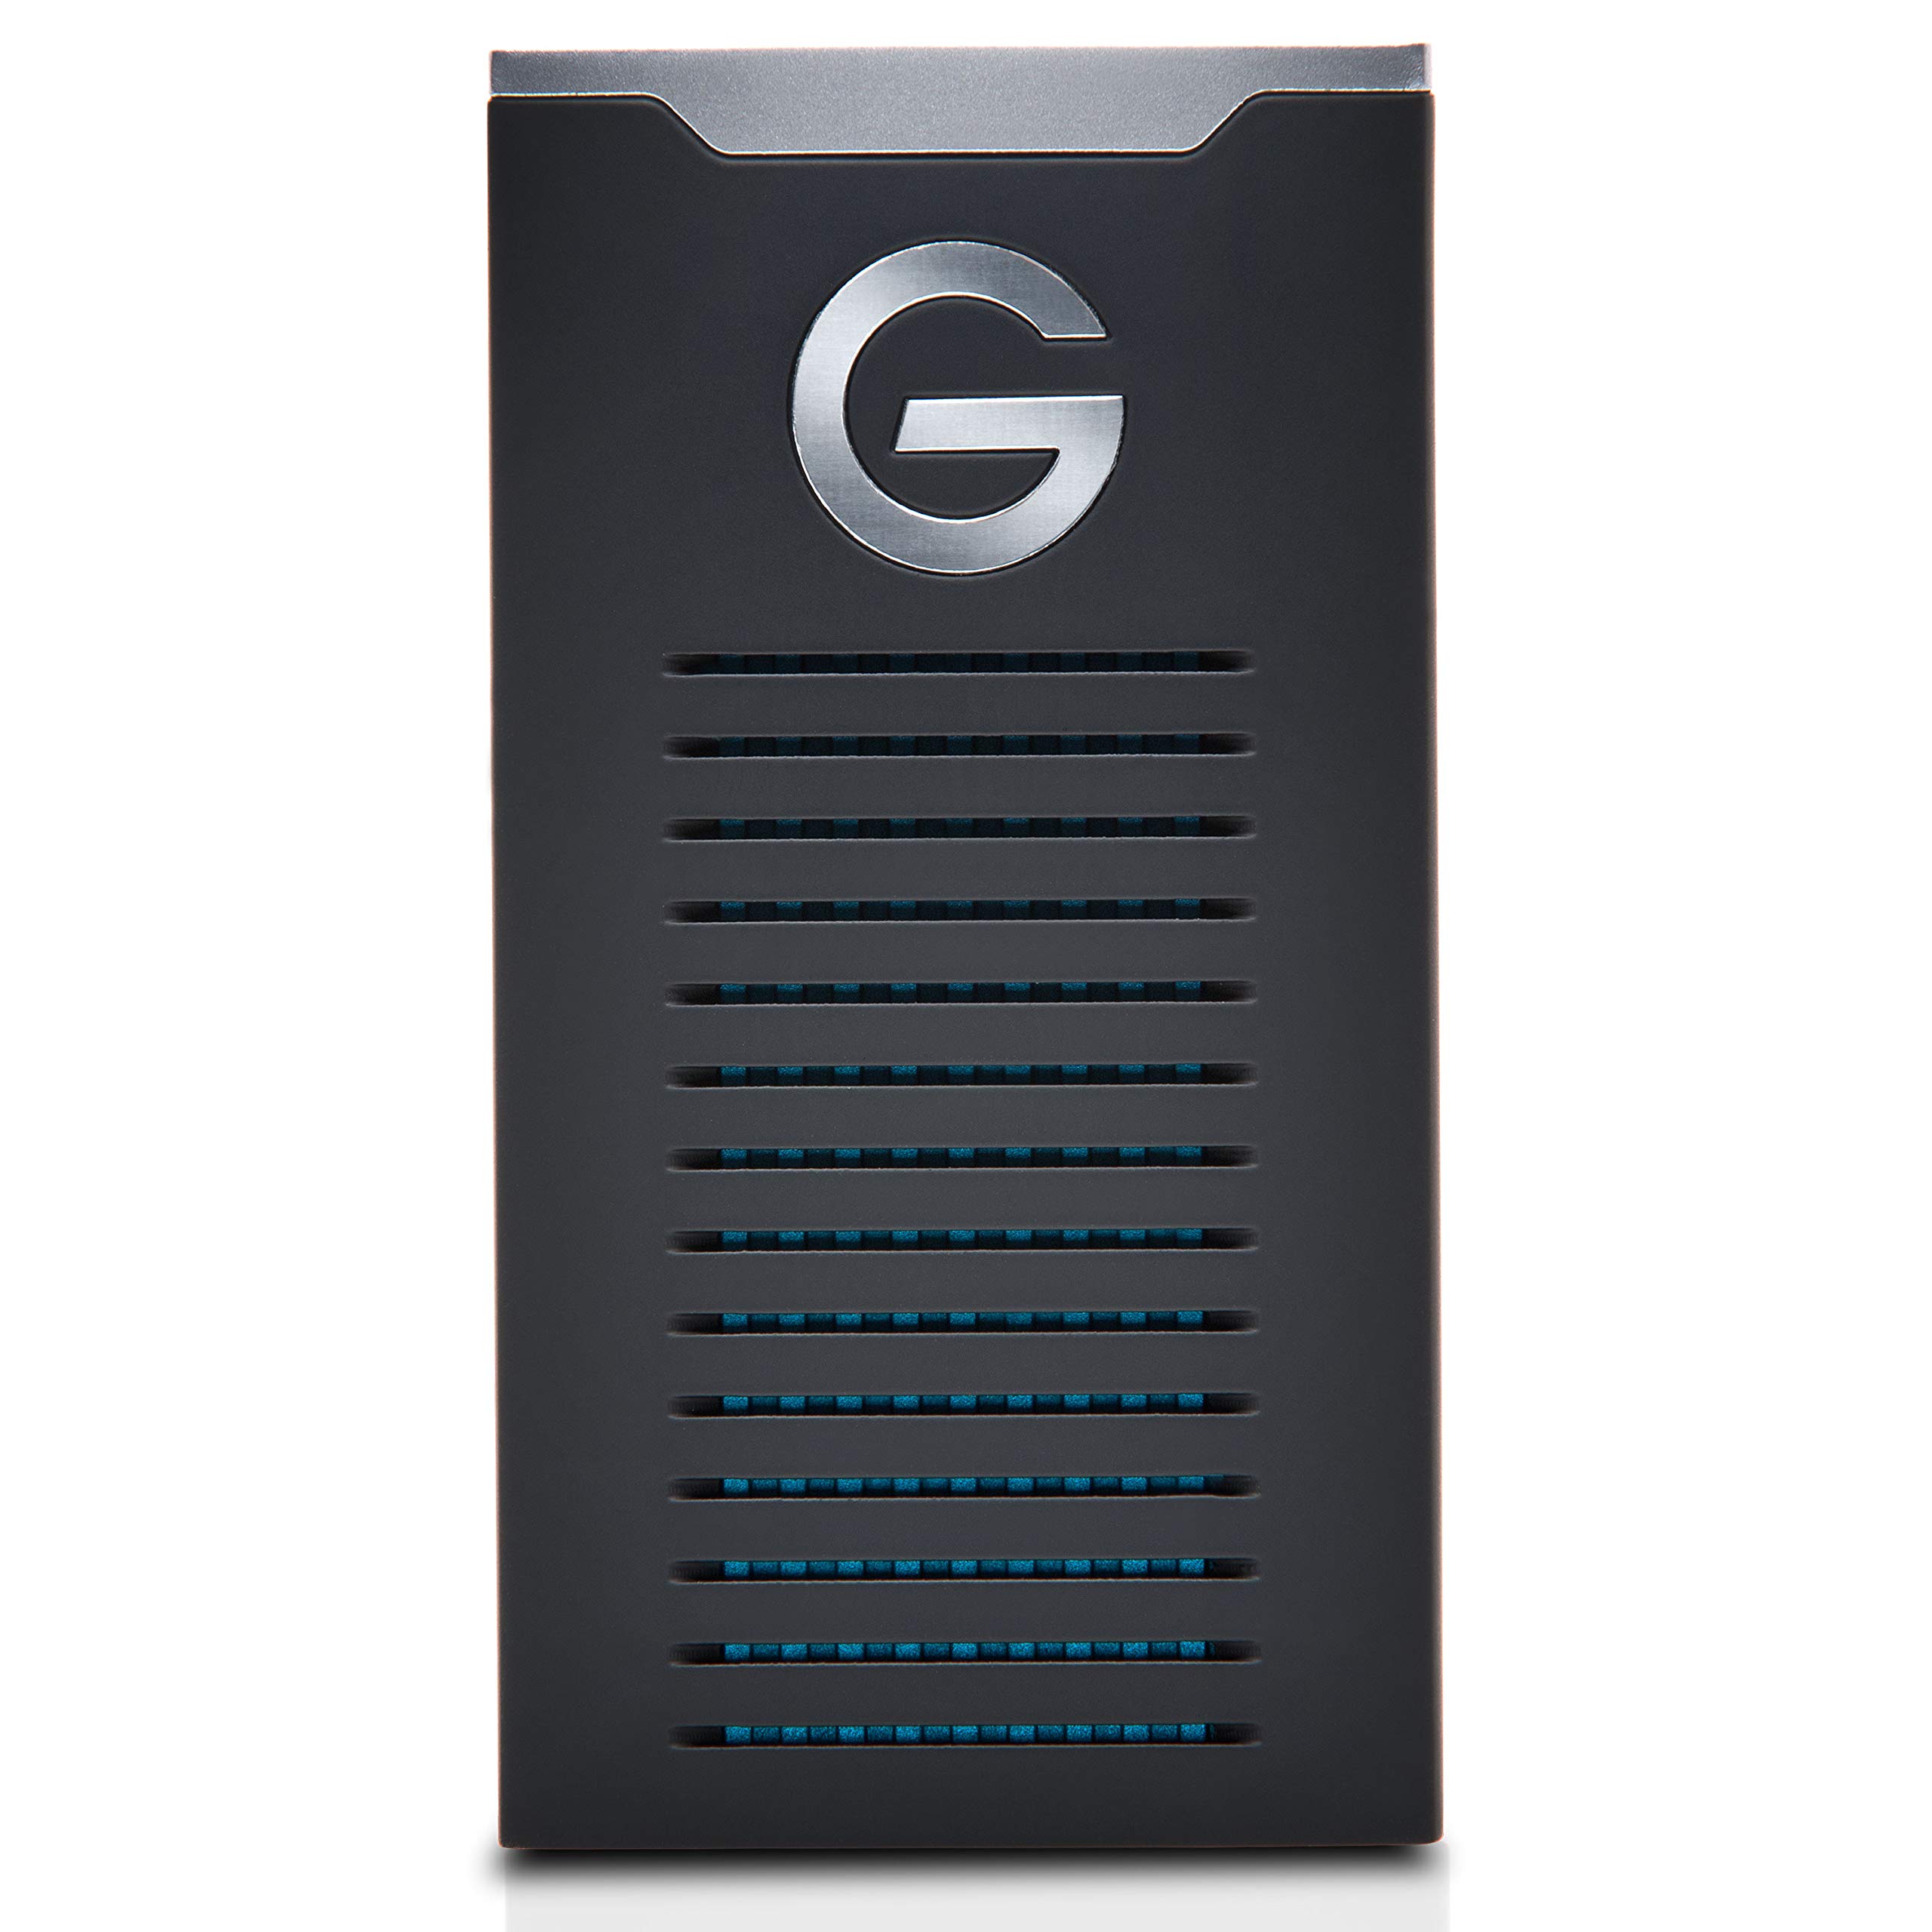 G-Technology 2TB G-DRIVE モバイル SSD 耐久性のあるポータブル外部ストレージ - USB-C (USB 3.1 Gen 2) - 0G06054